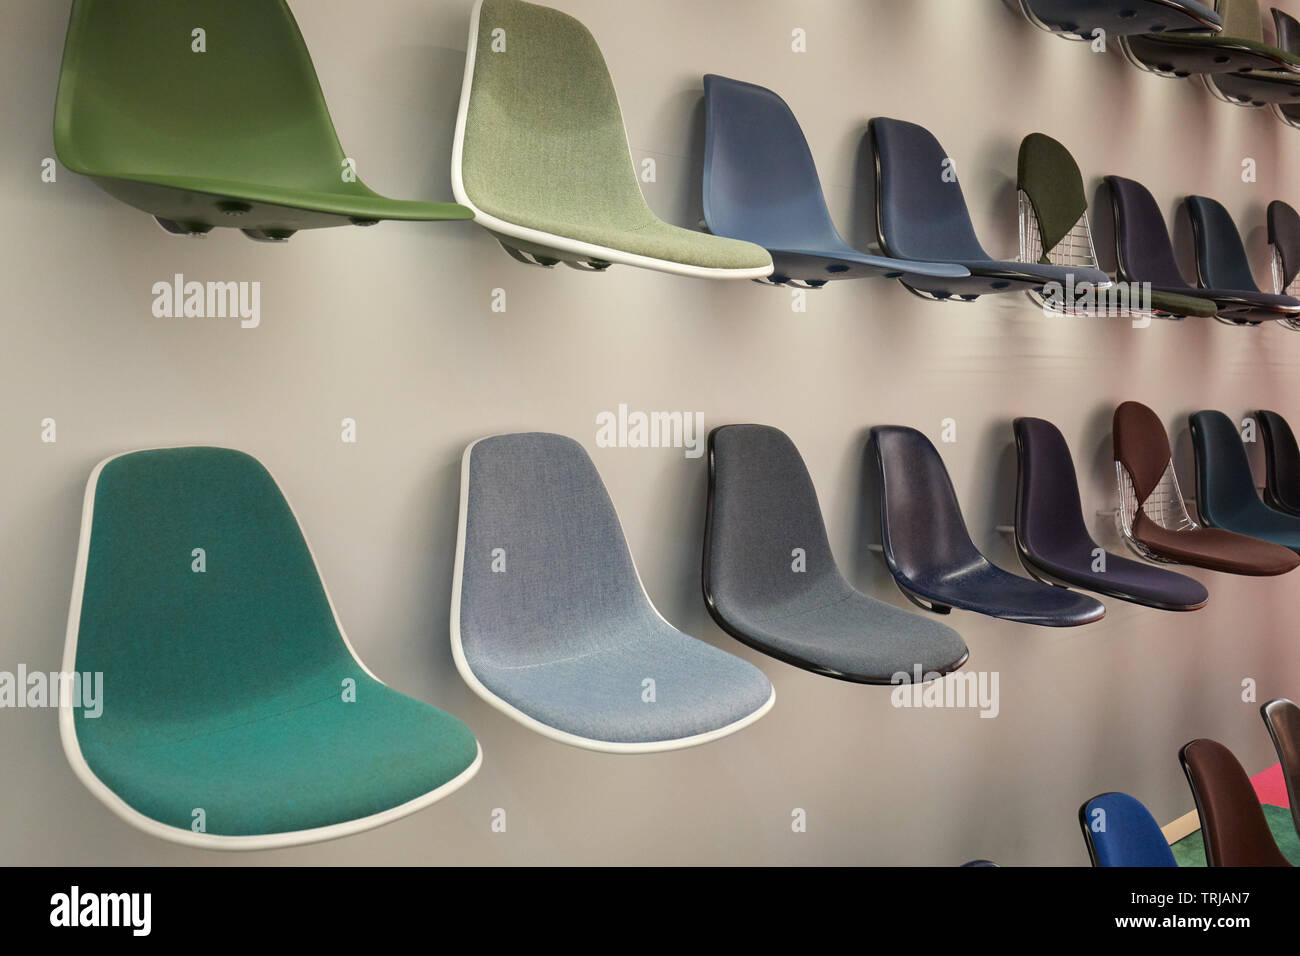 Milano, Italia - 11 Aprile 2019: Settimana del Design a Milano, sedie Eames Vitra installazione e mostra durante il Salone del Mobile di Milano, Italia. Foto Stock